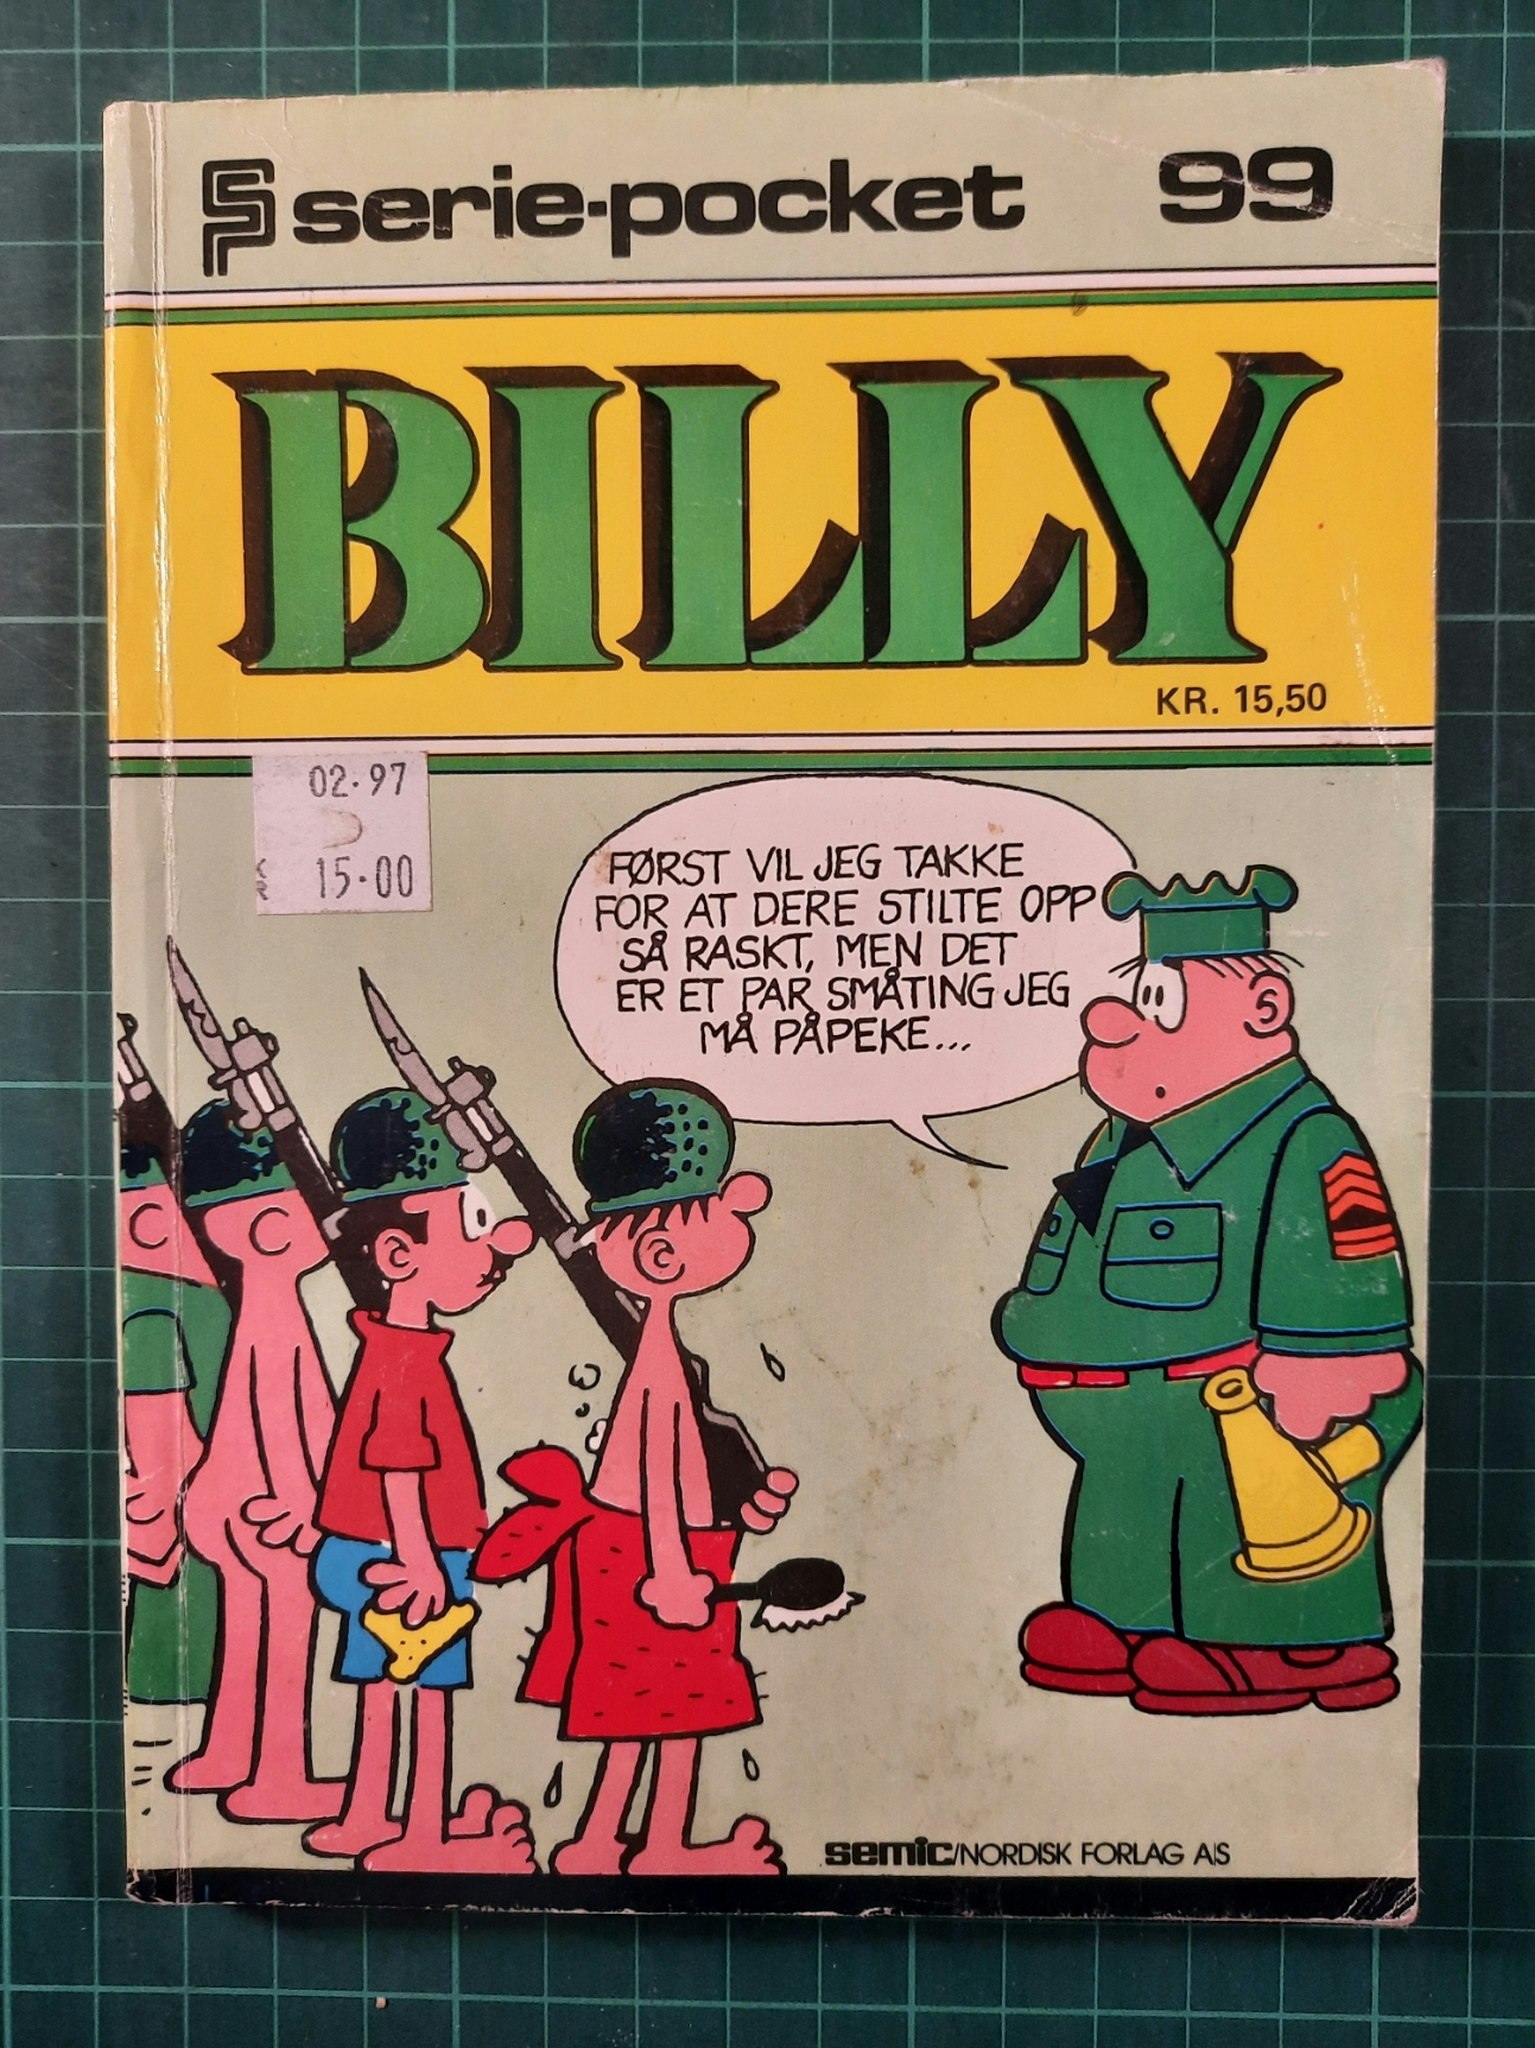 Serie-pocket 099 : Billy